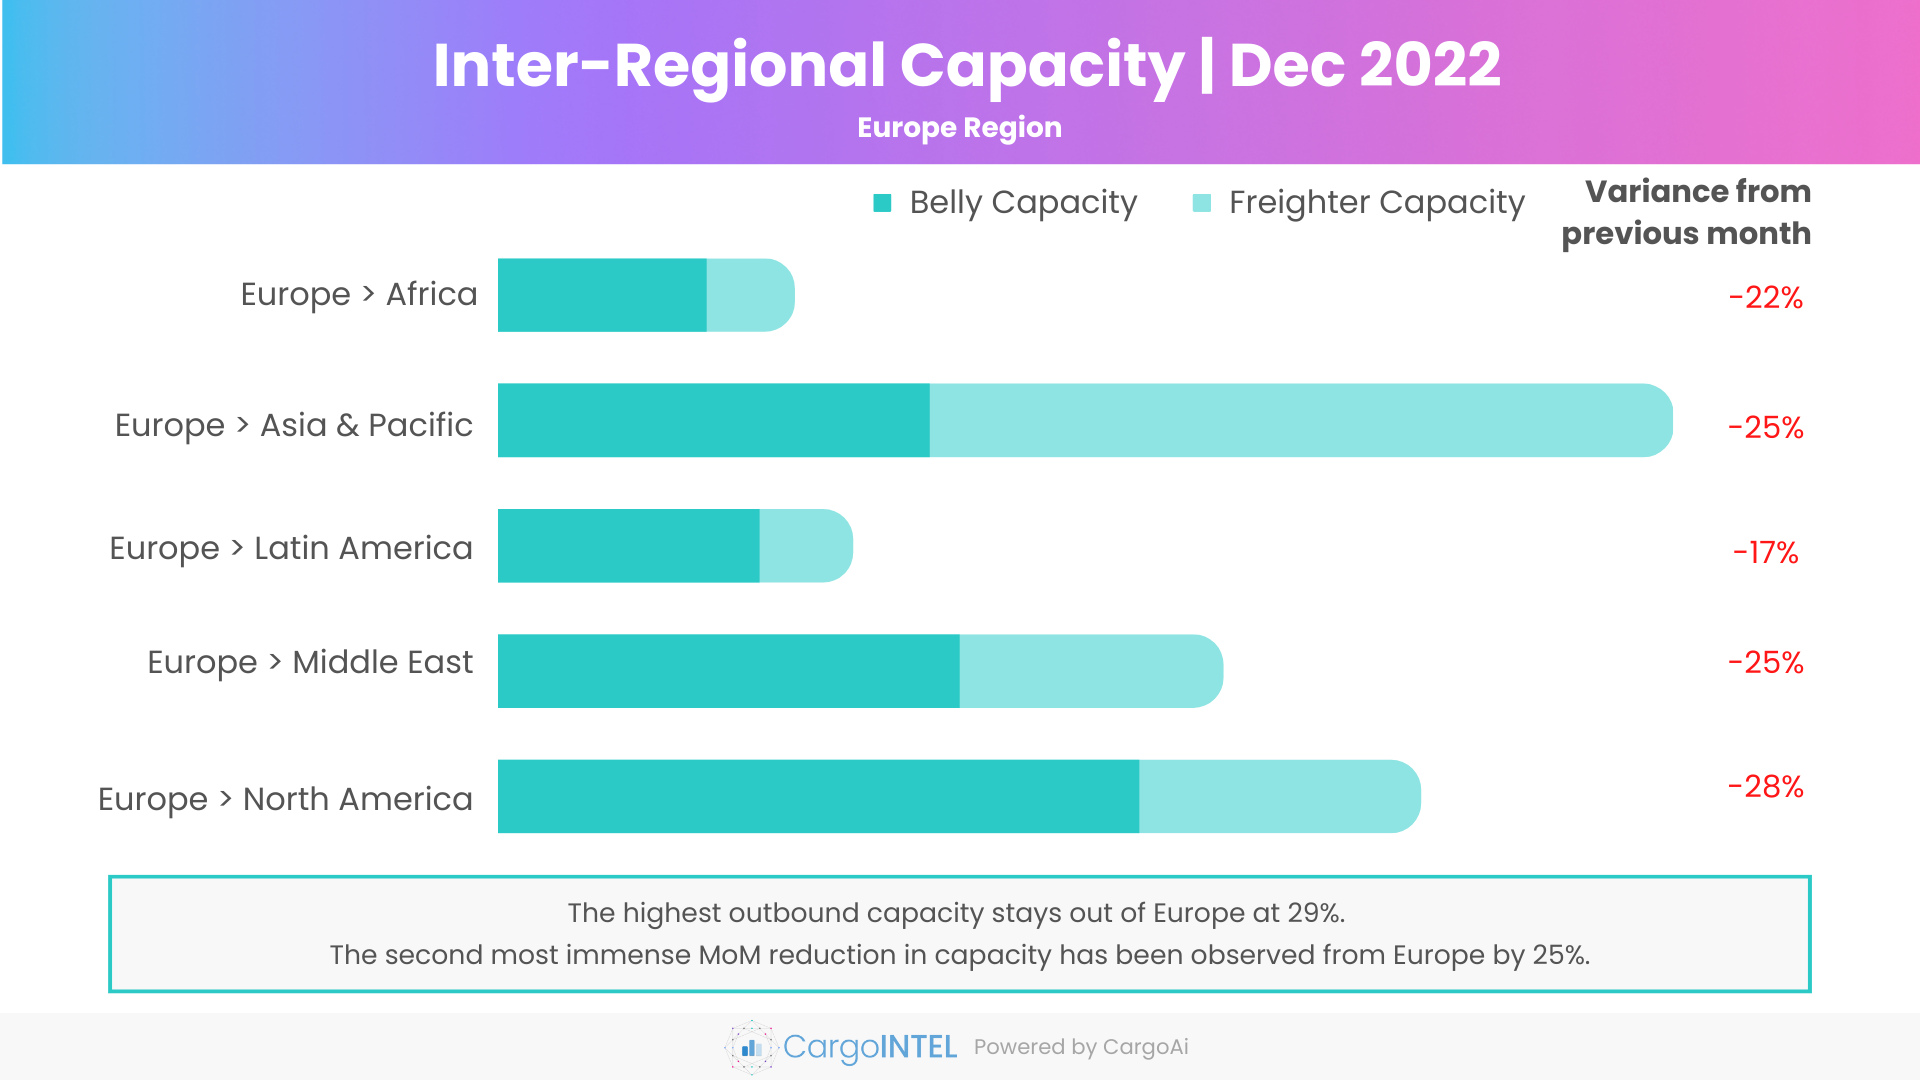 Air cargo capacity of Europe region of Dec 2022